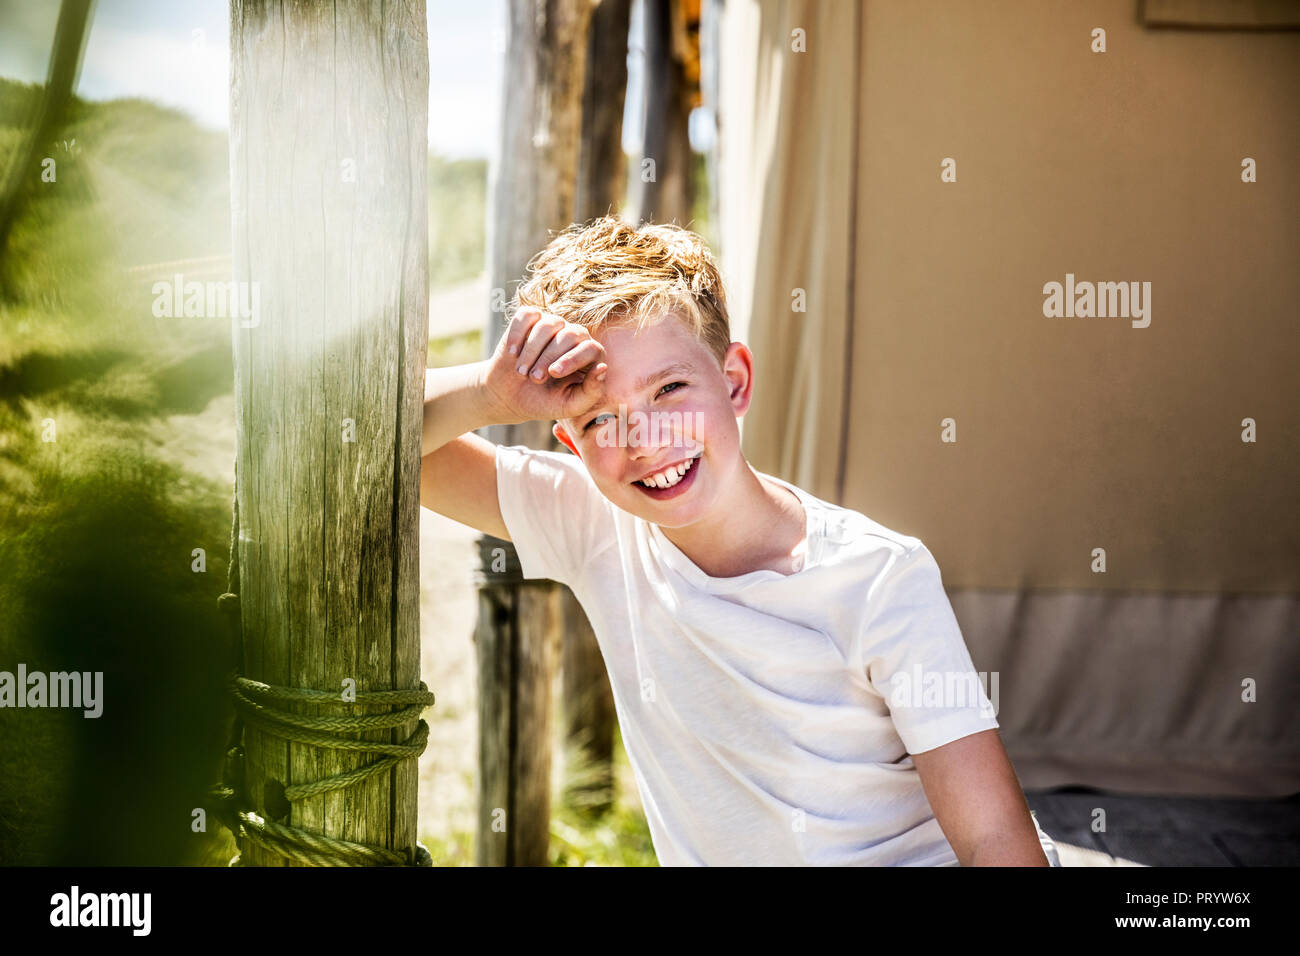 Portrait of happy boy on campsite Stock Photo